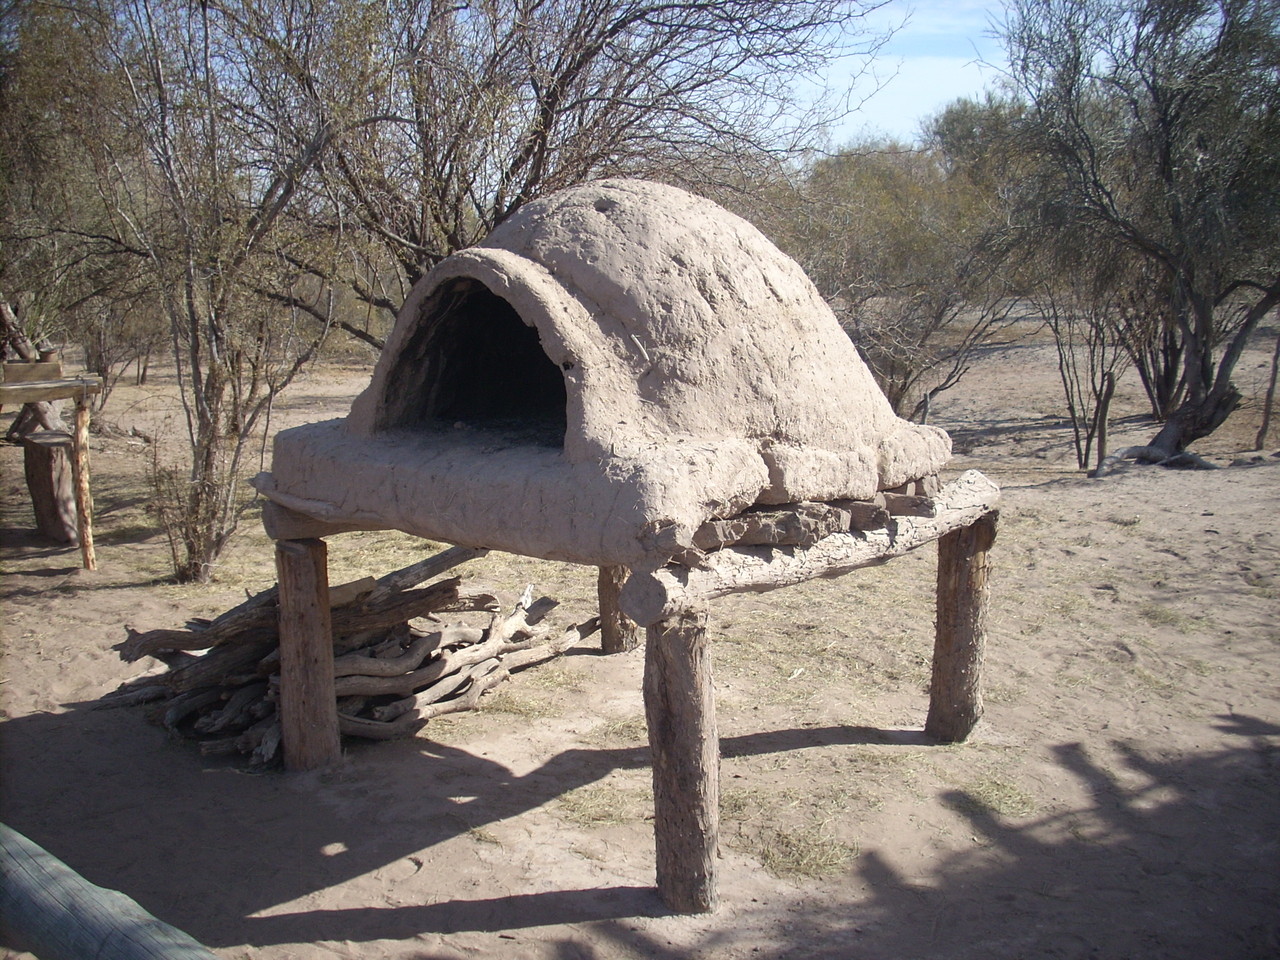 Horno de barro típico de los puestos del desierto